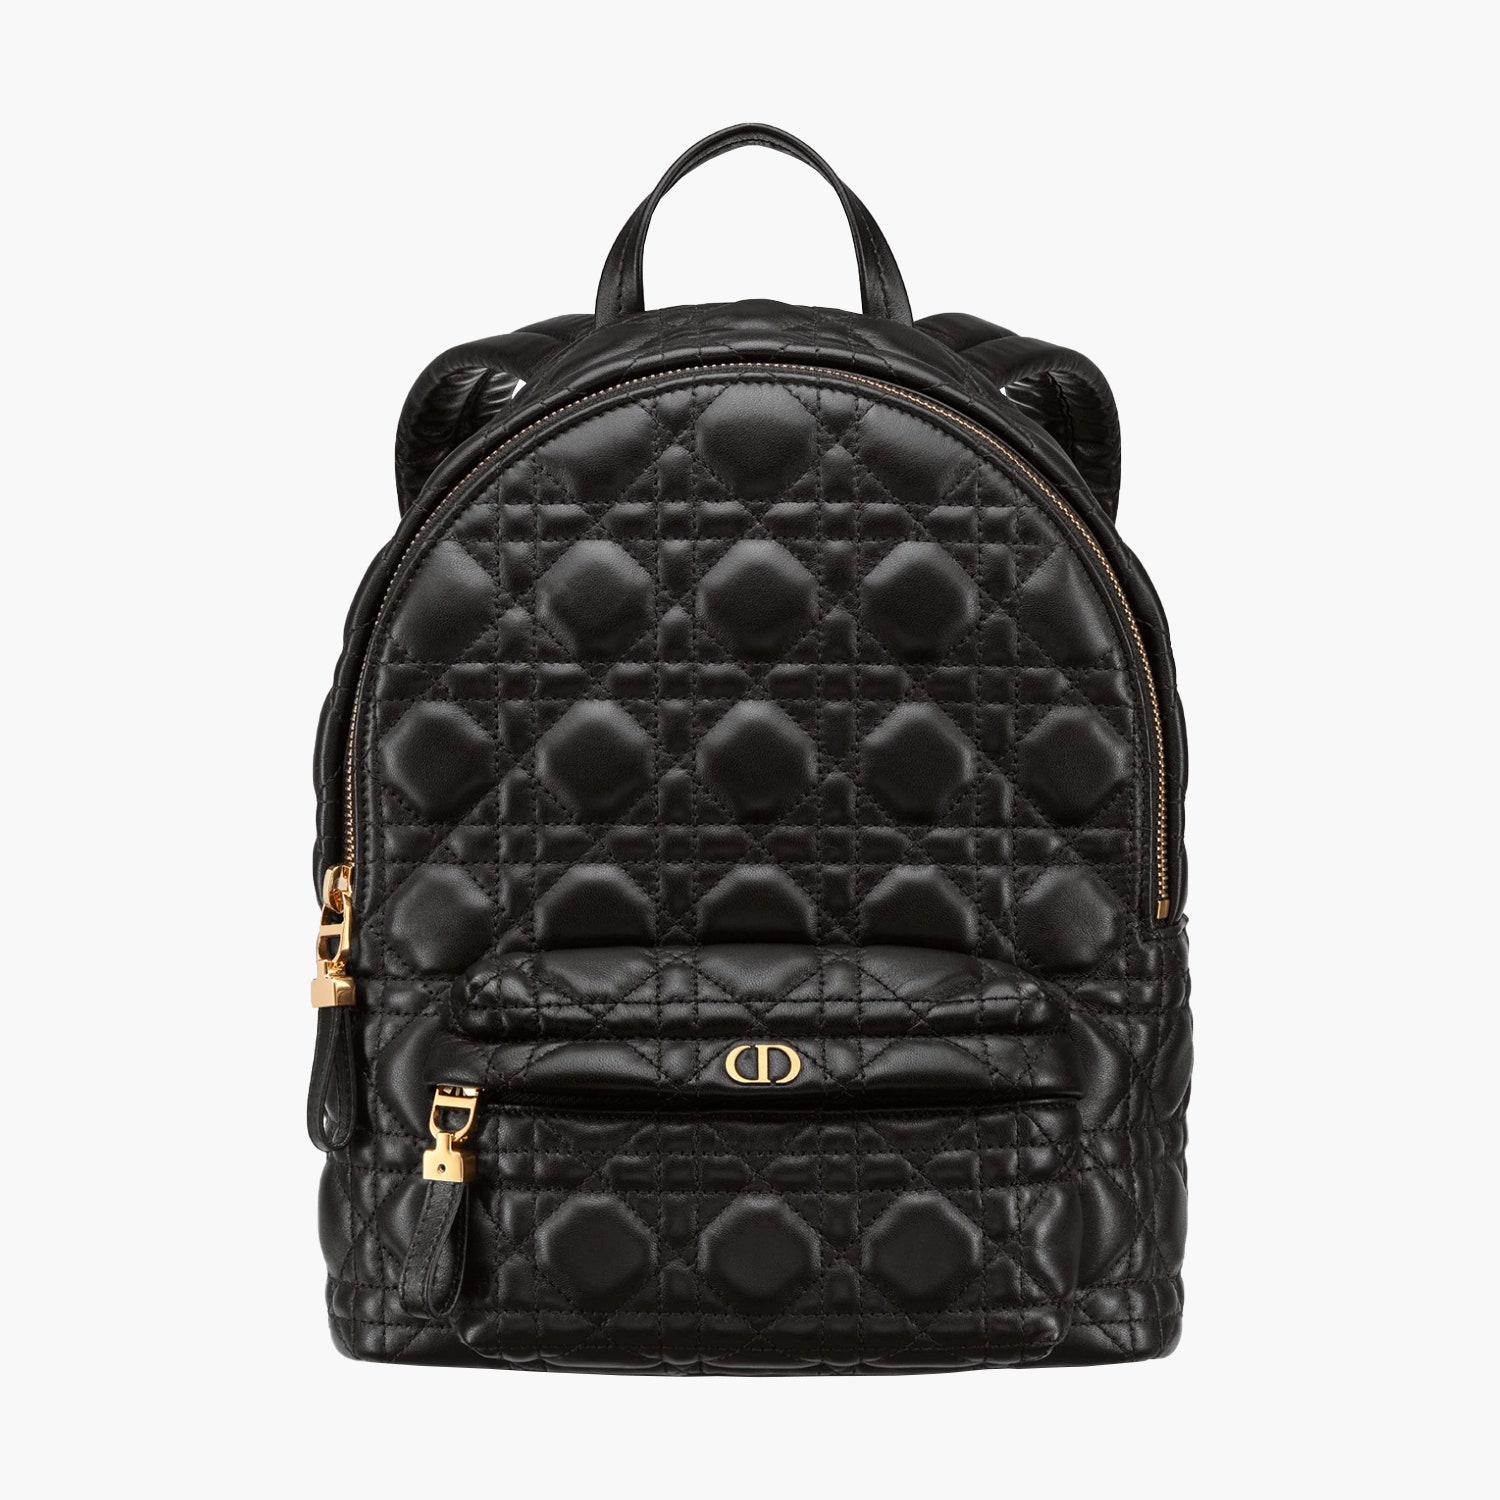 Кожаный рюкзак с узором Cannage Dior 290000 рублей dior.com